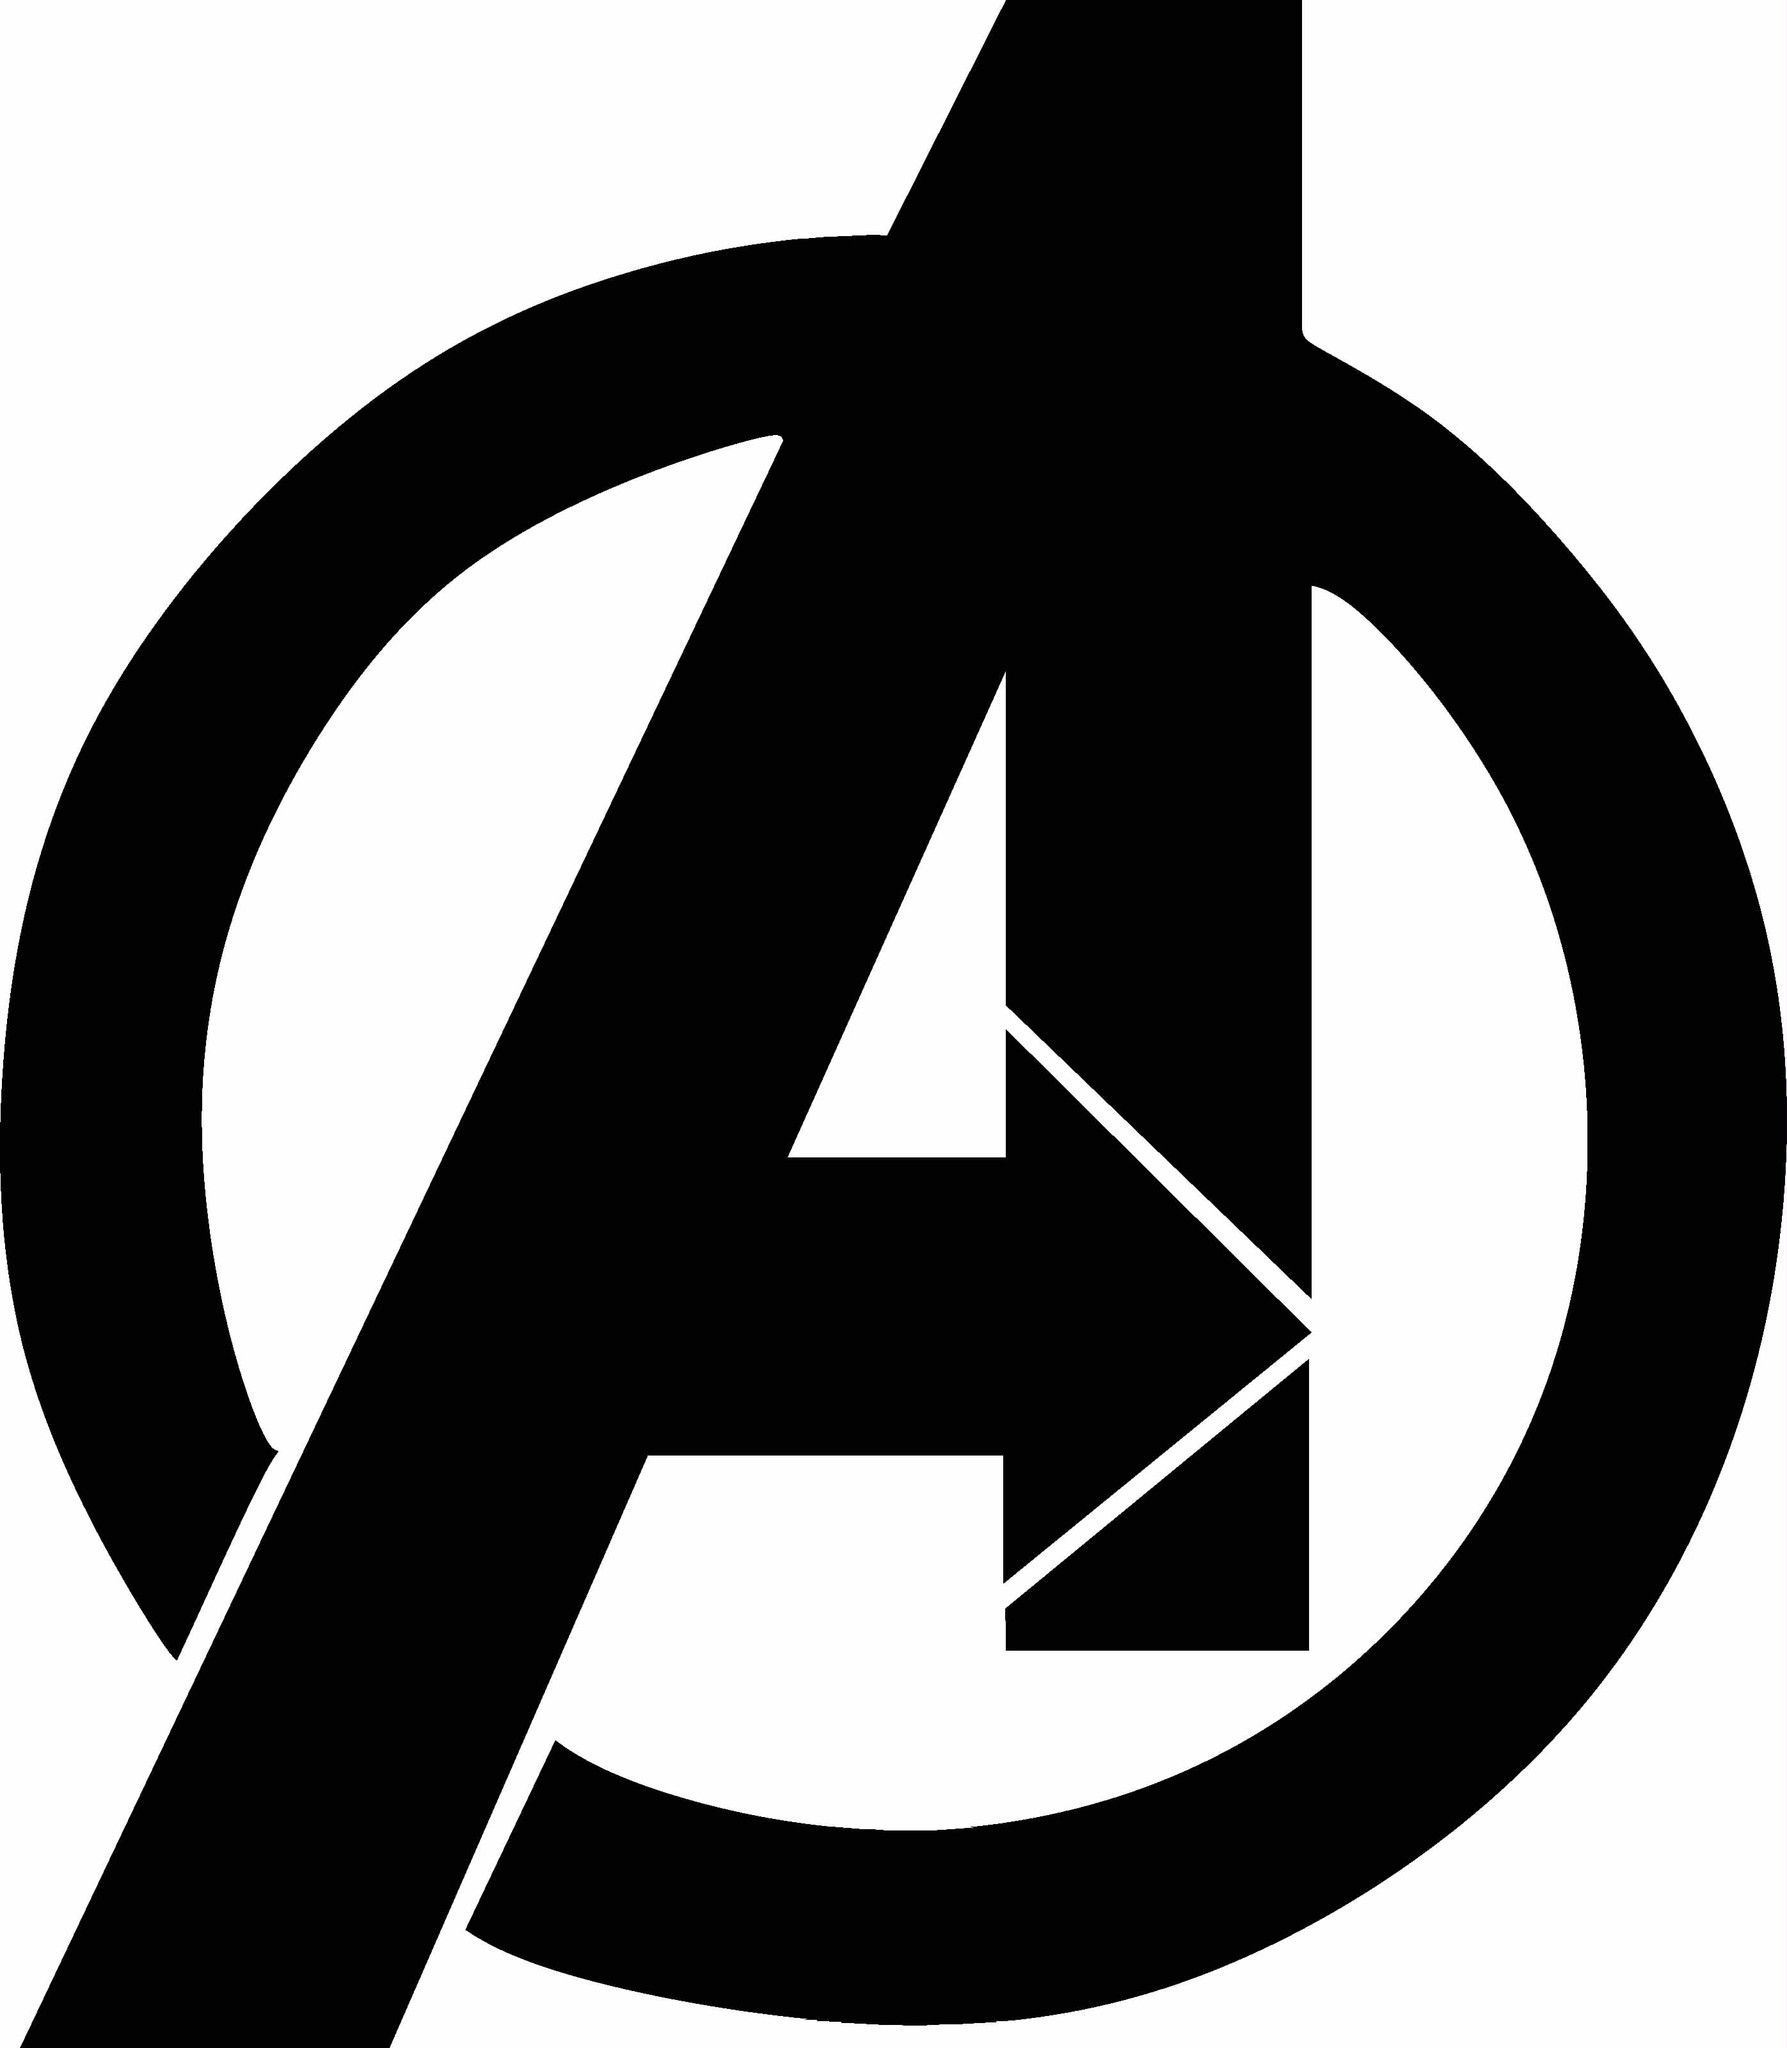 Avengers logo clipart.